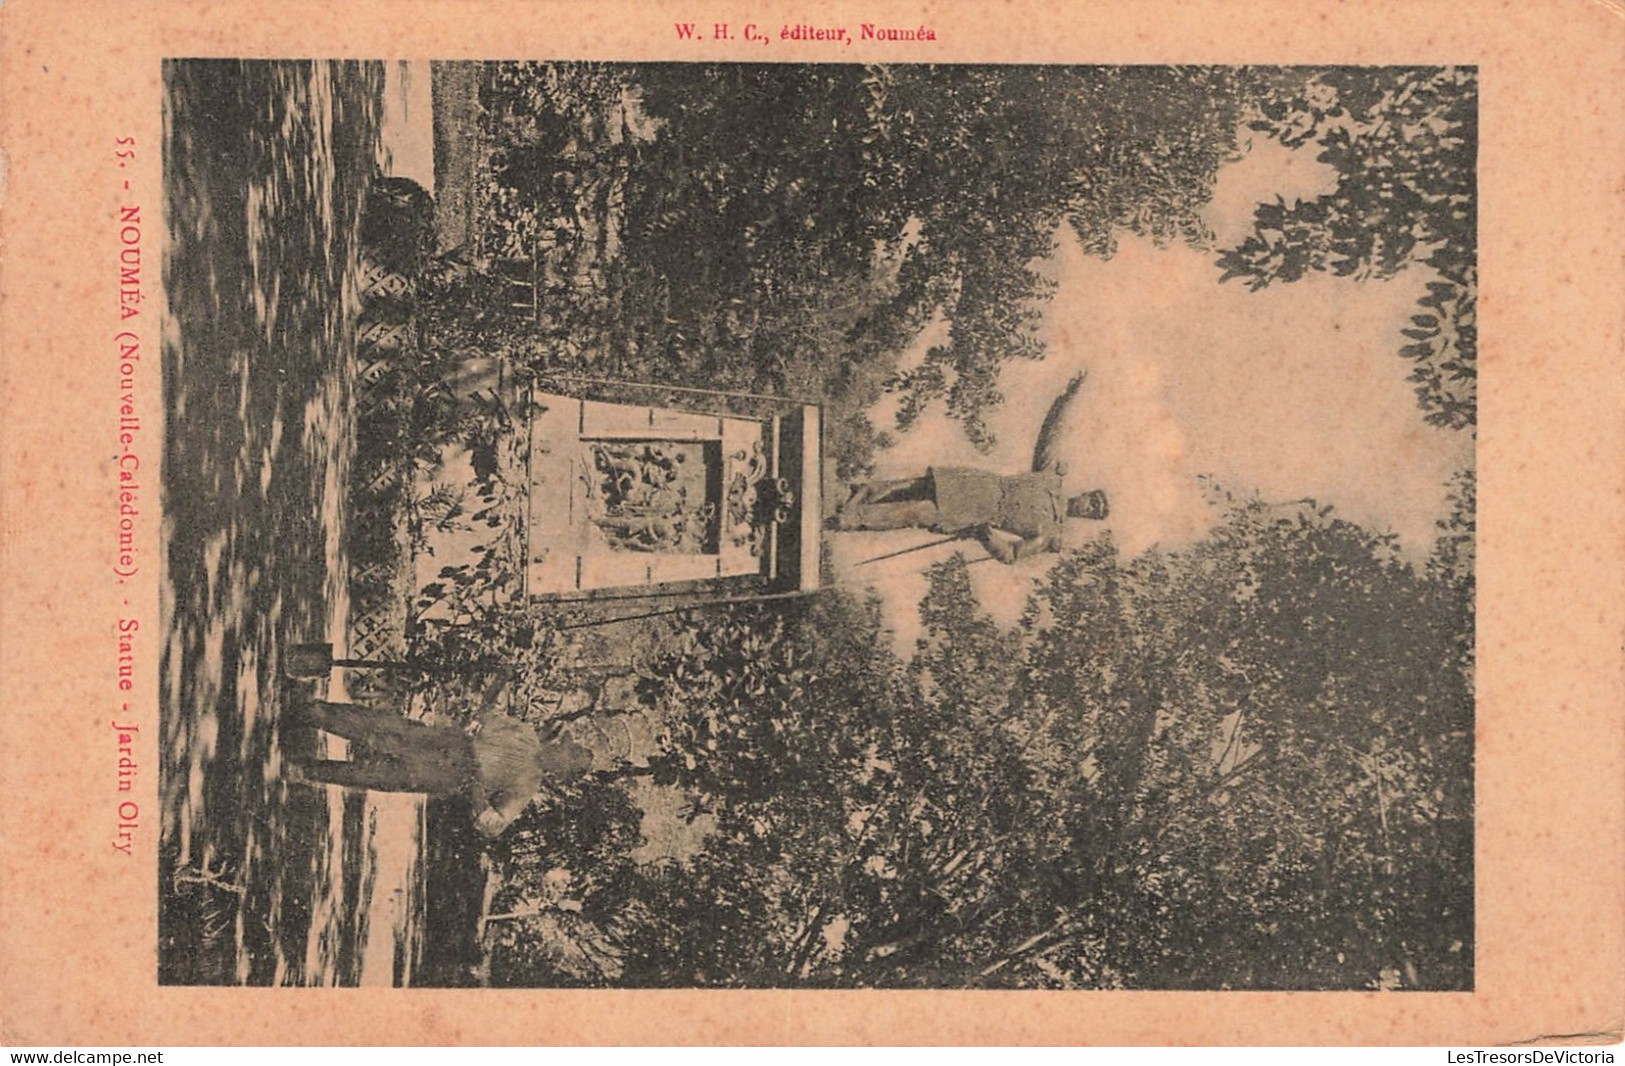 Nouvelle Calédonie - Nouméa - Statue Jardin Olry - Animé - Edit. W.H.C. - Carte Postale Ancienne - Neukaledonien